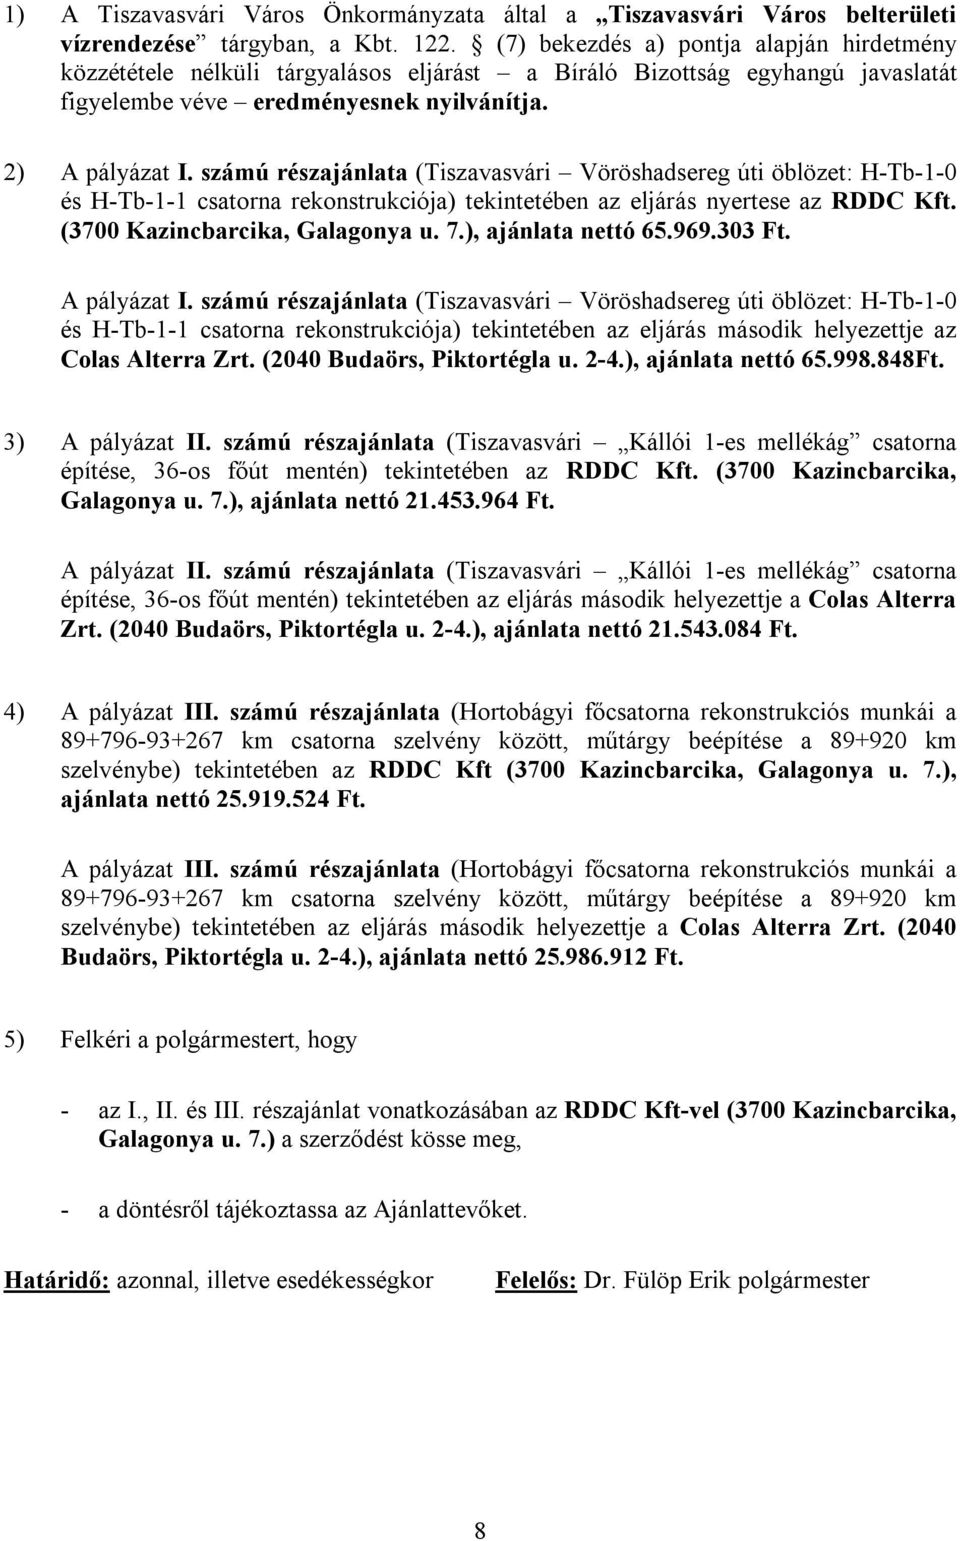 számú részajánlata (Tiszavasvári Vöröshadsereg úti öblözet: H-Tb-1-0 és H-Tb-1-1 csatorna rekonstrukciója) tekintetében az eljárás nyertese az RDDC Kft. (3700 Kazincbarcika, Galagonya u. 7.